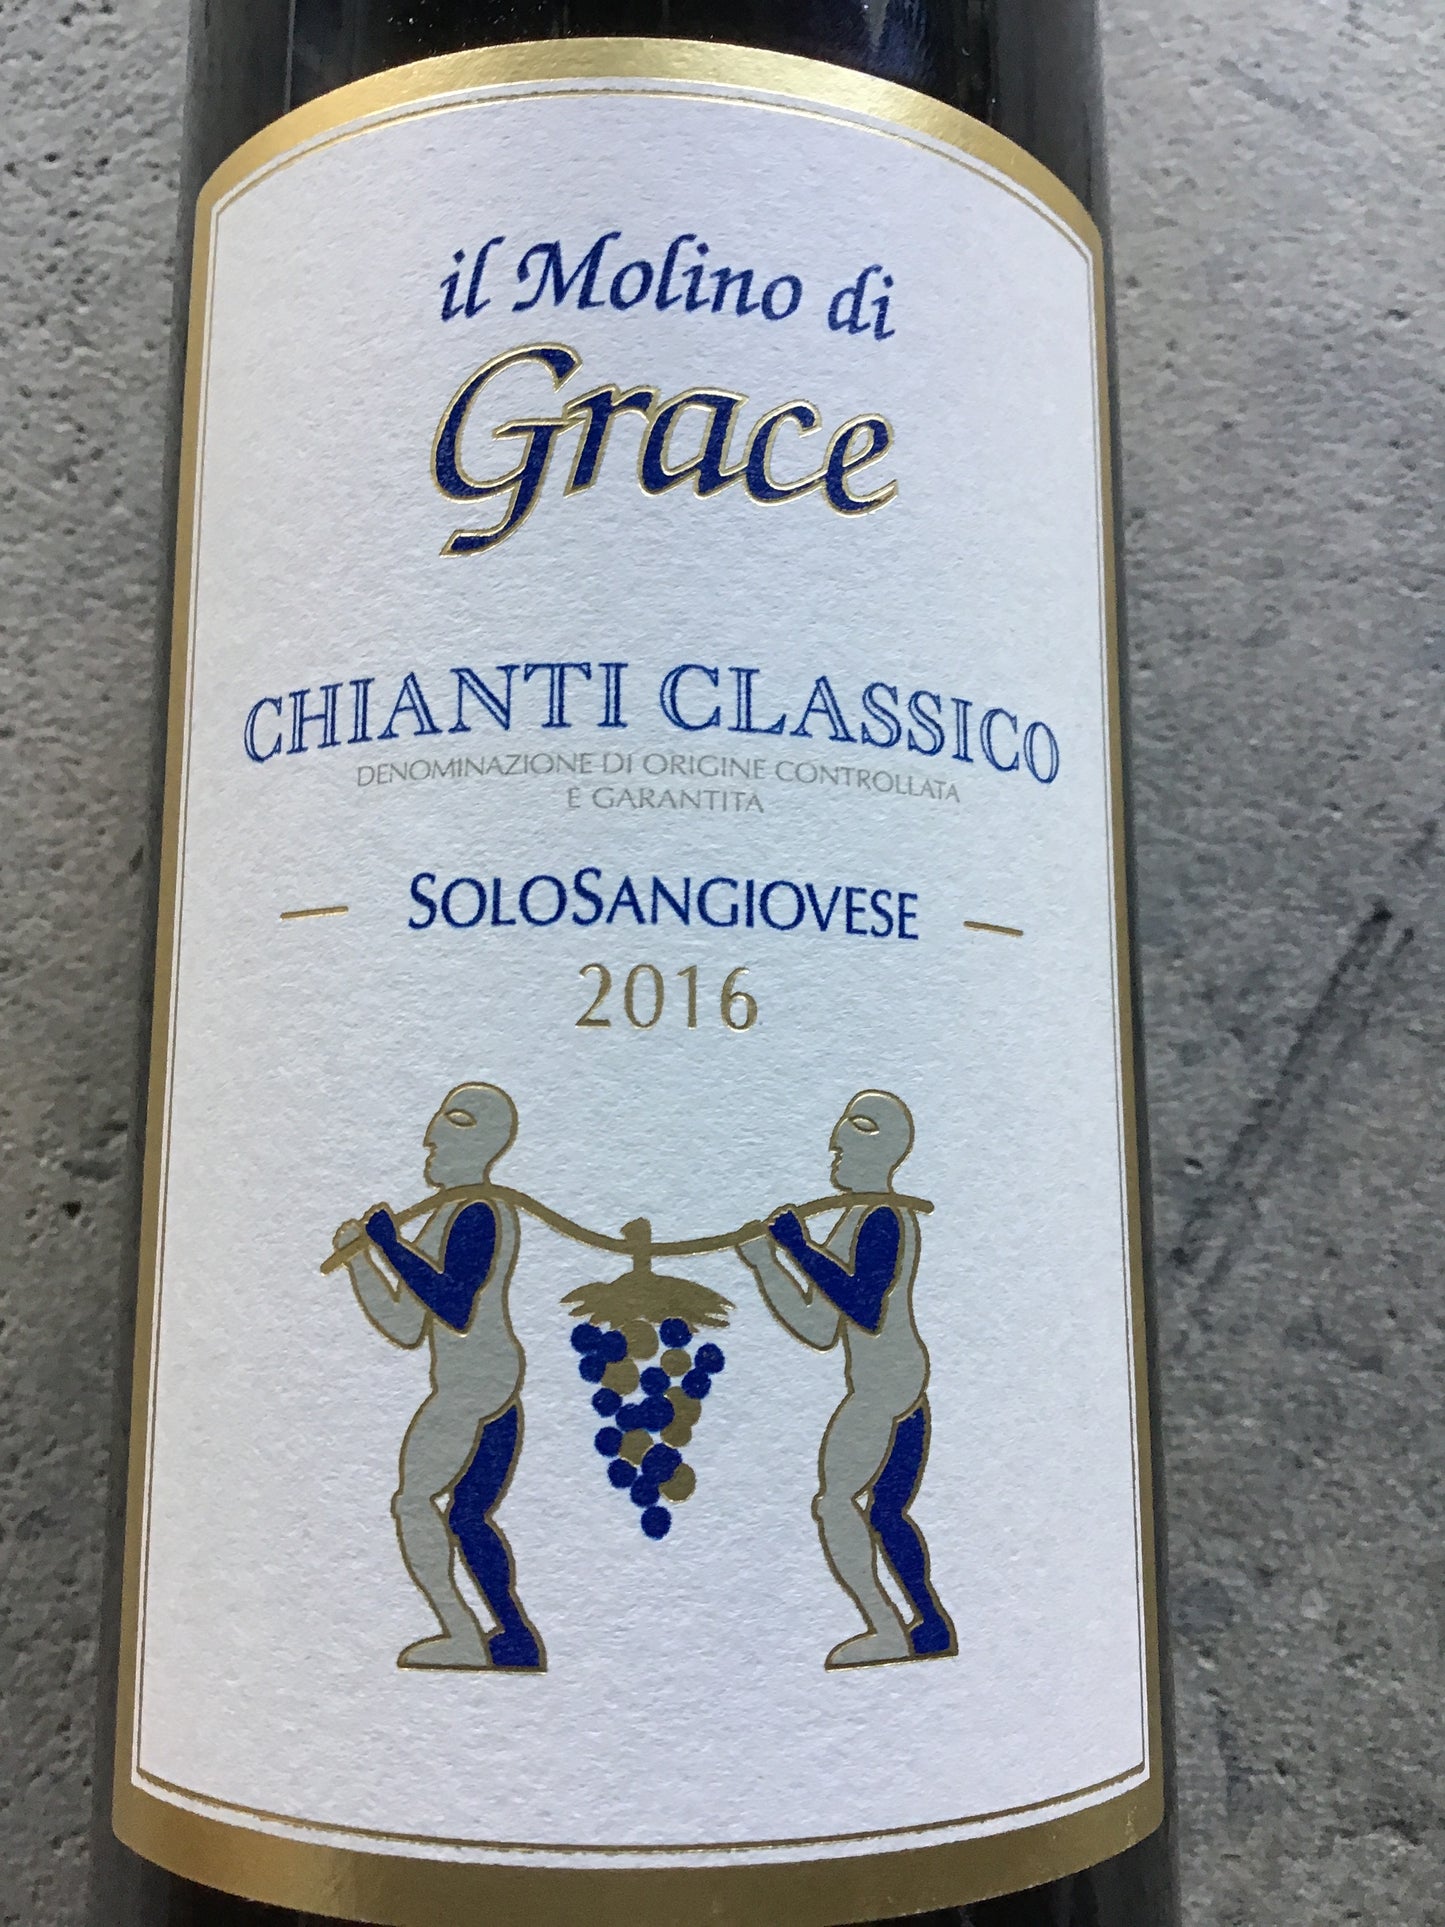 Il Molino di Grace 'SoloSangiovese' - Chianti Classico